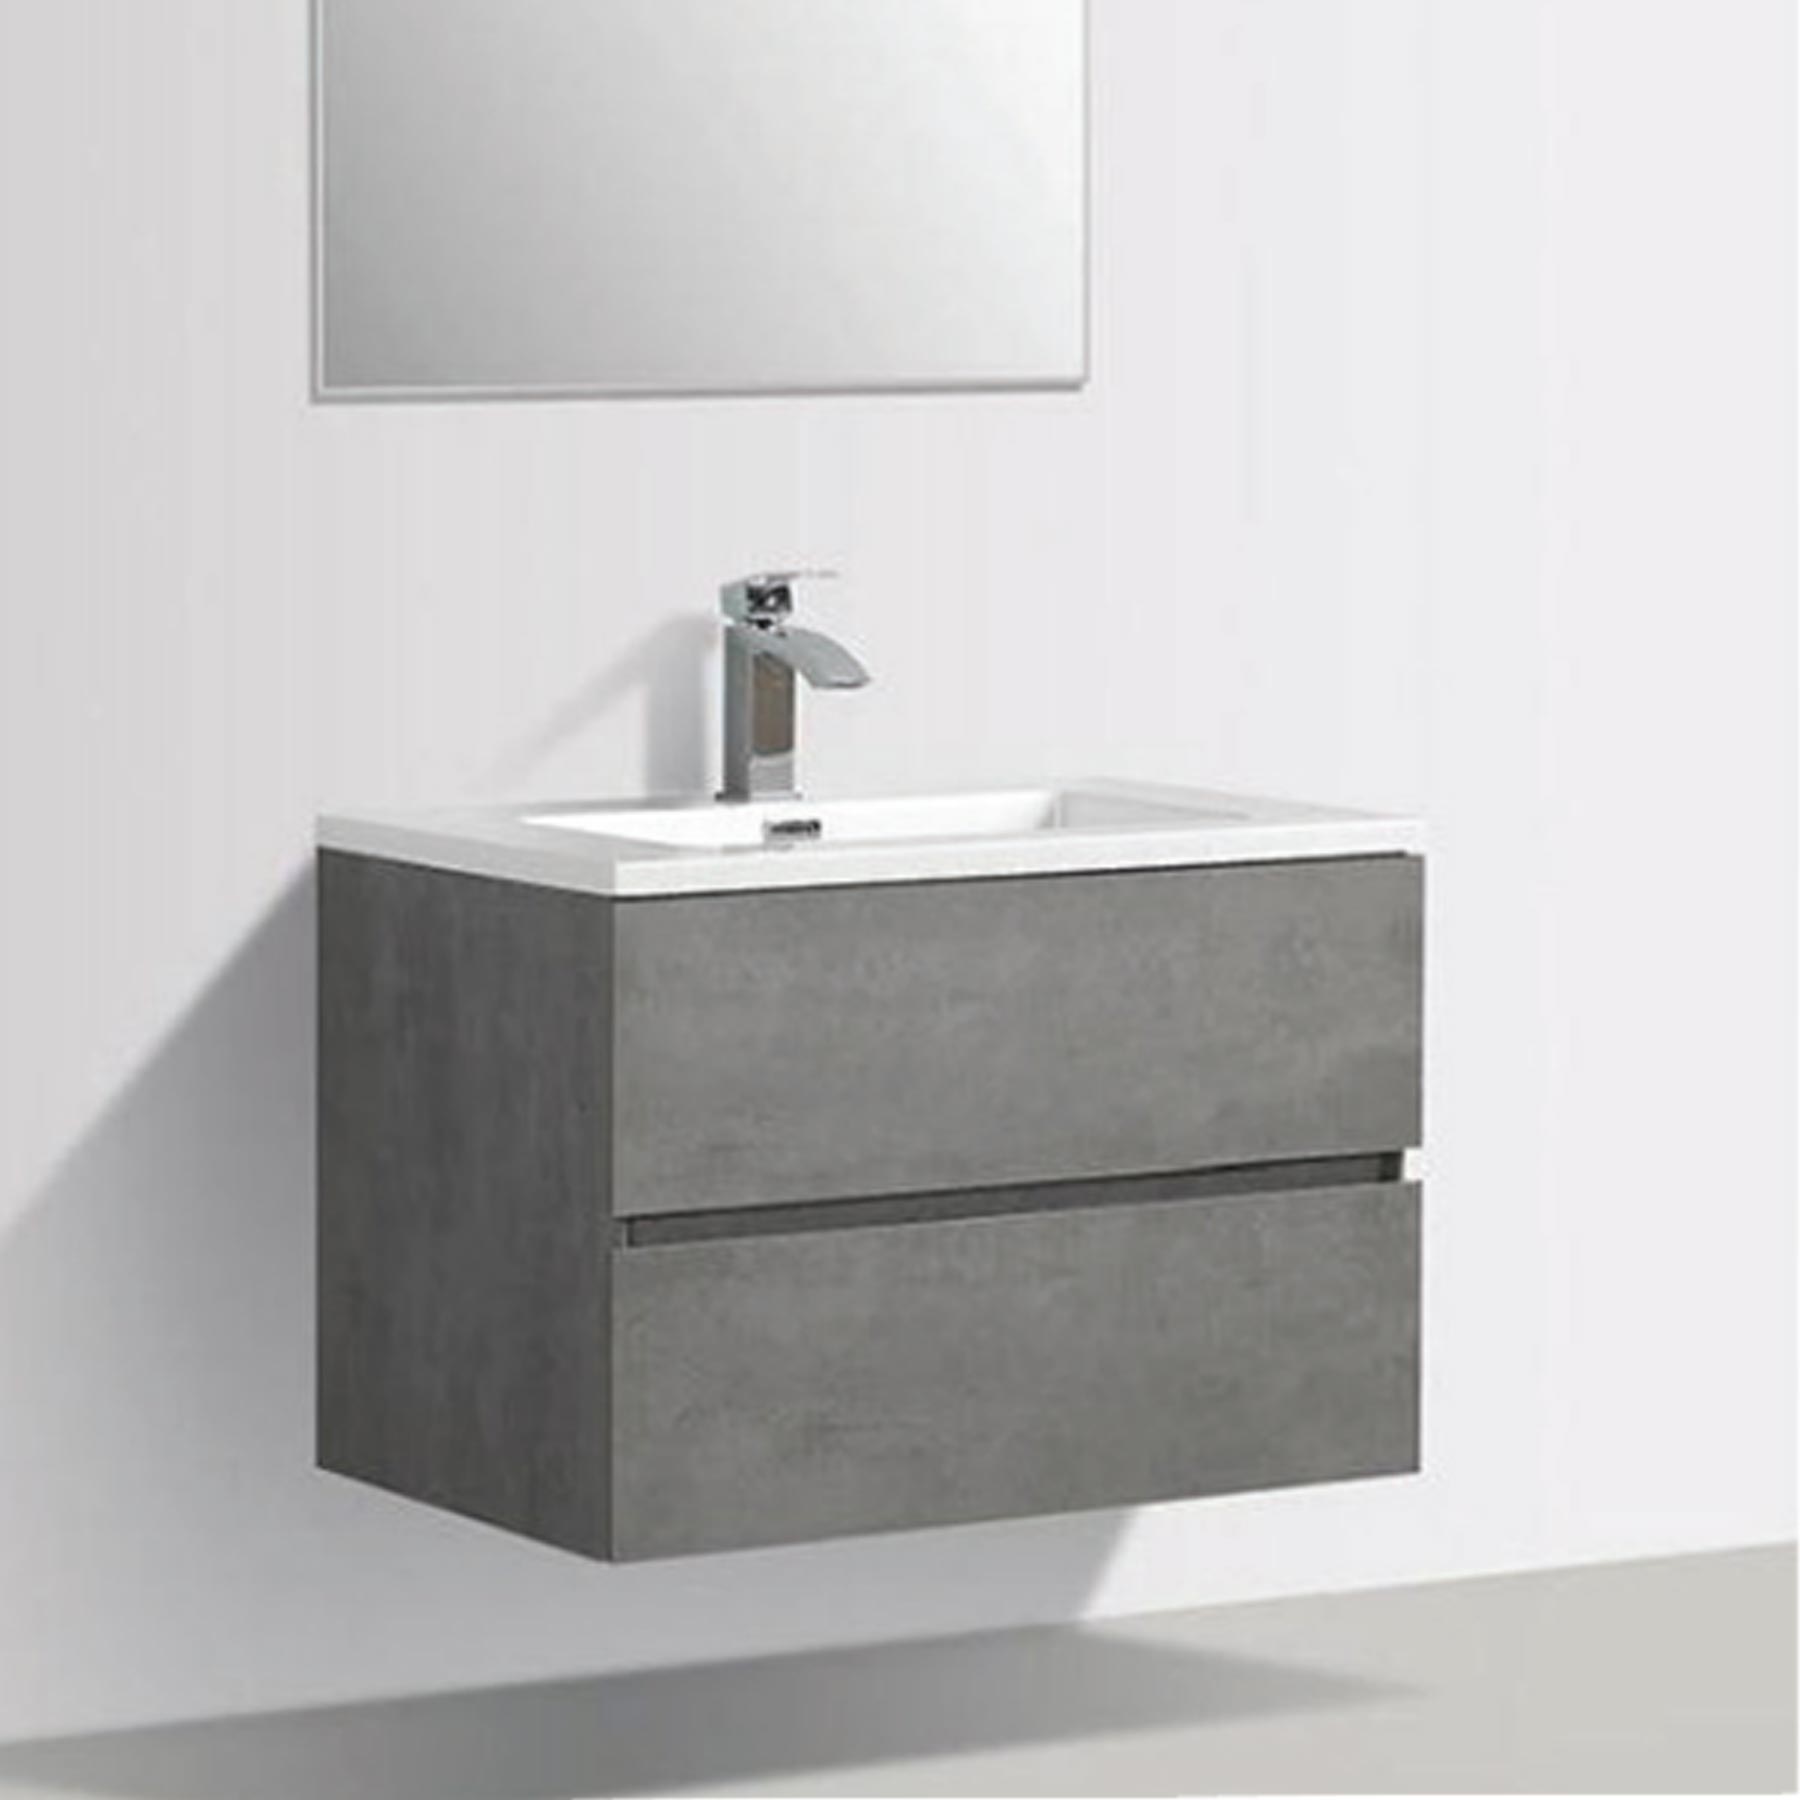 Stylish Ella Wall Hung Vanity Unit in Grey with Sturdy Ceramic Basin